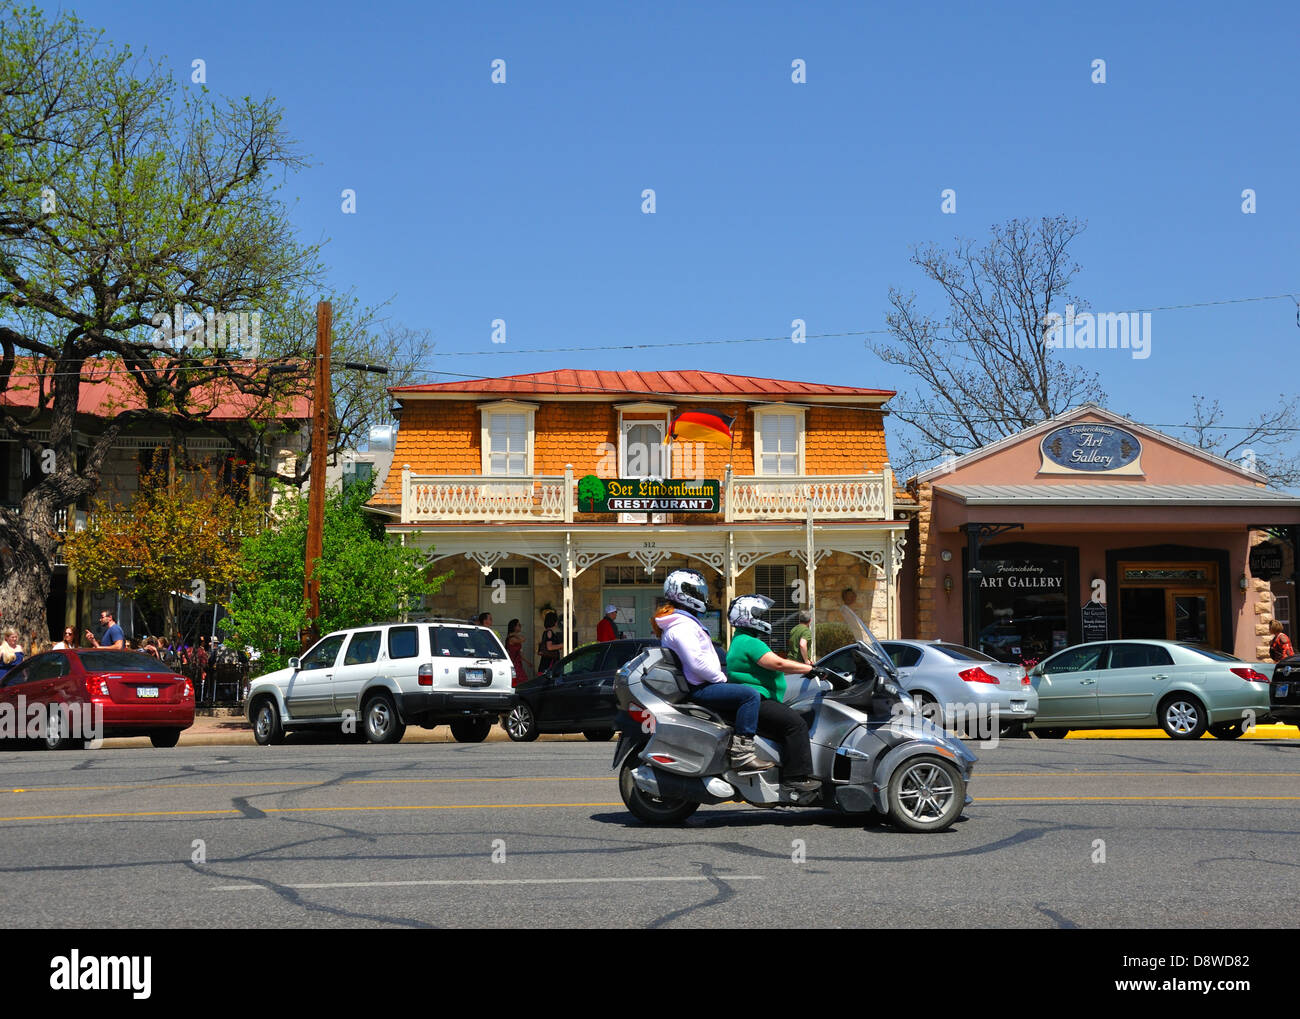 Spyder 3 wheel Can-Am Motorcycle driving through Fredericksburg, Texas, USA Stock Photo